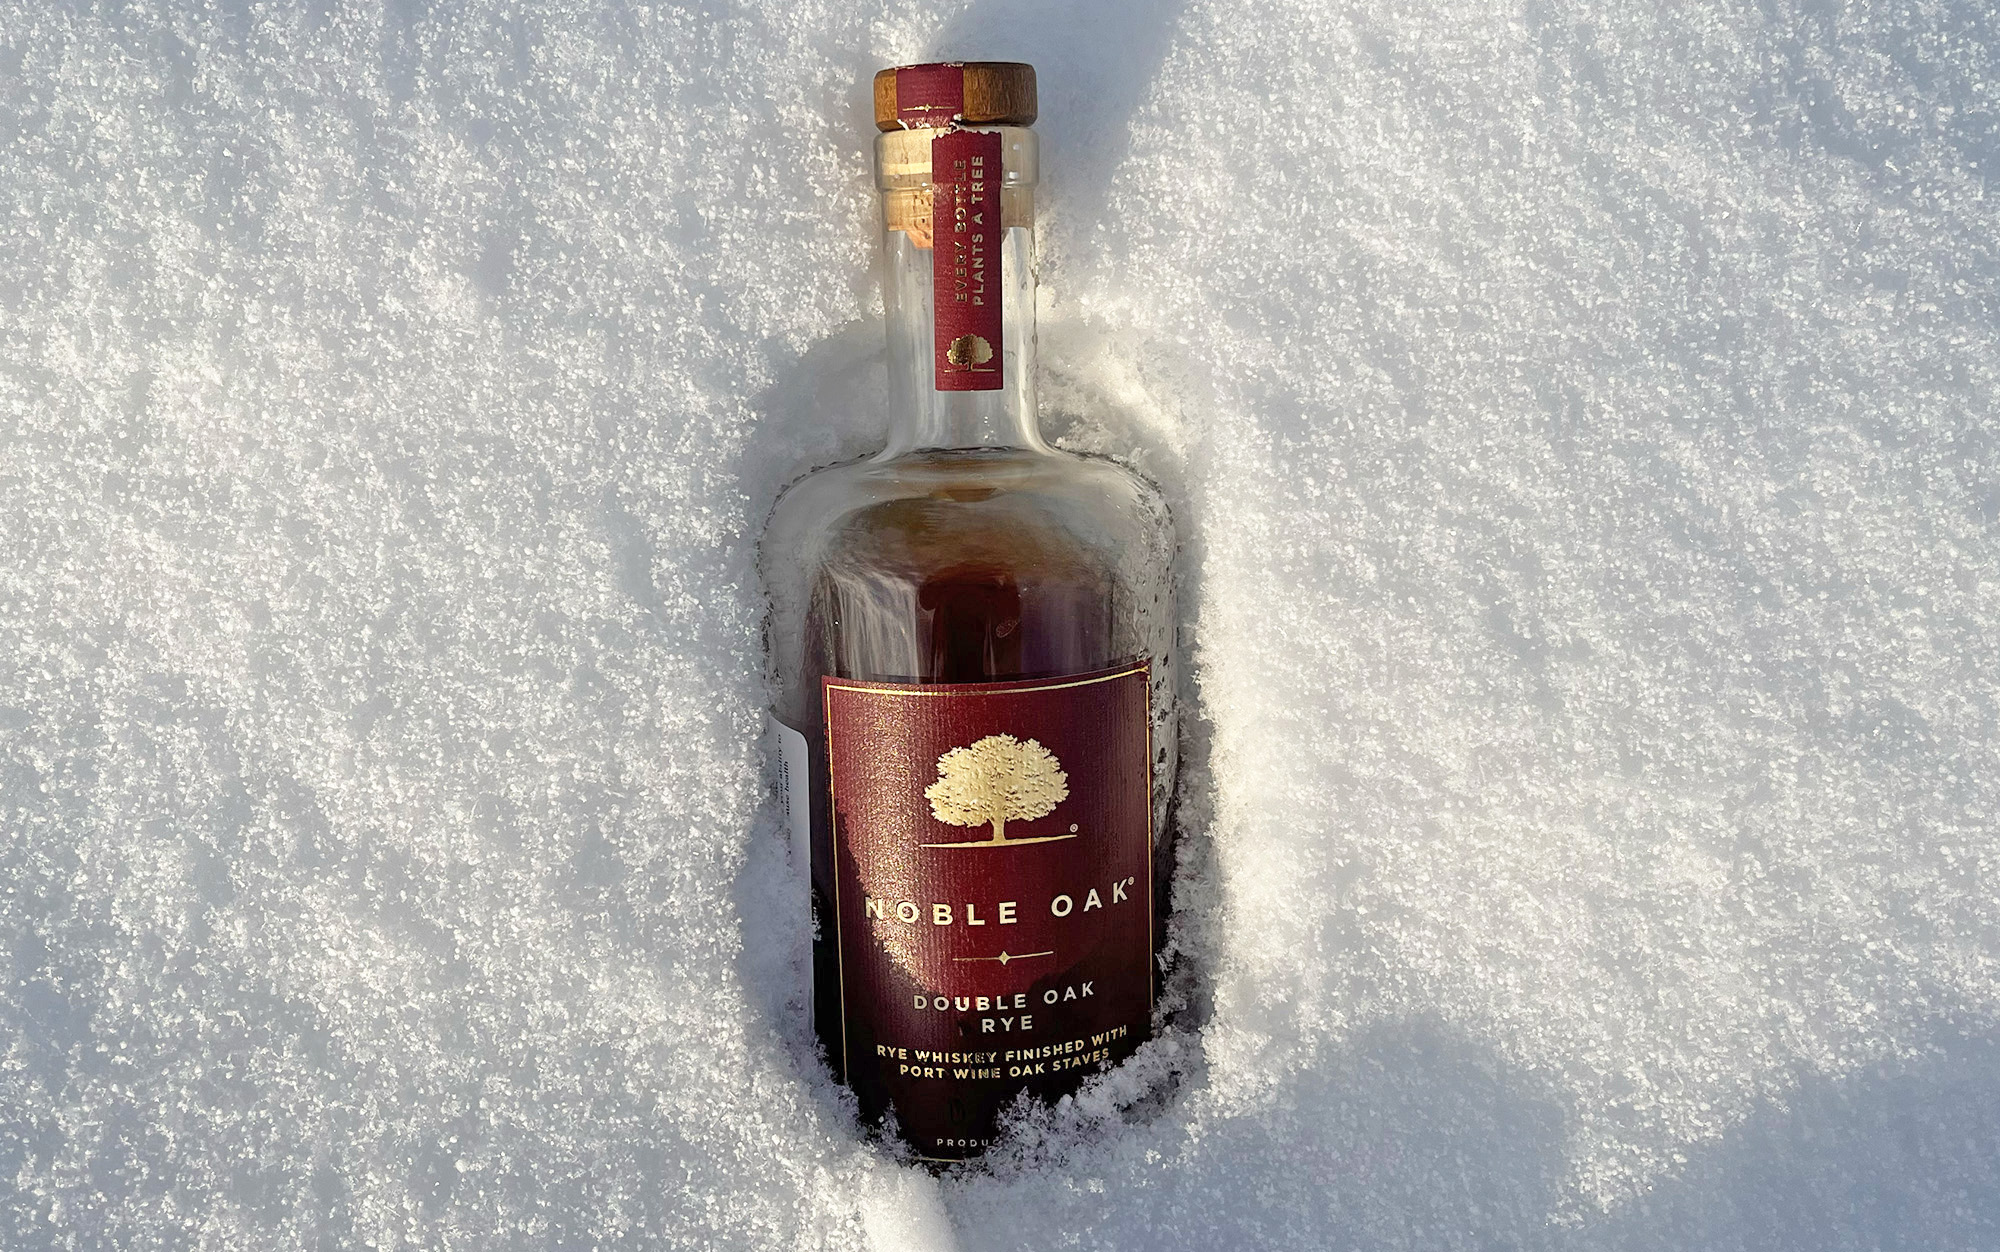 The Noble Oak Double Oak Rye is the best for drinking alone.